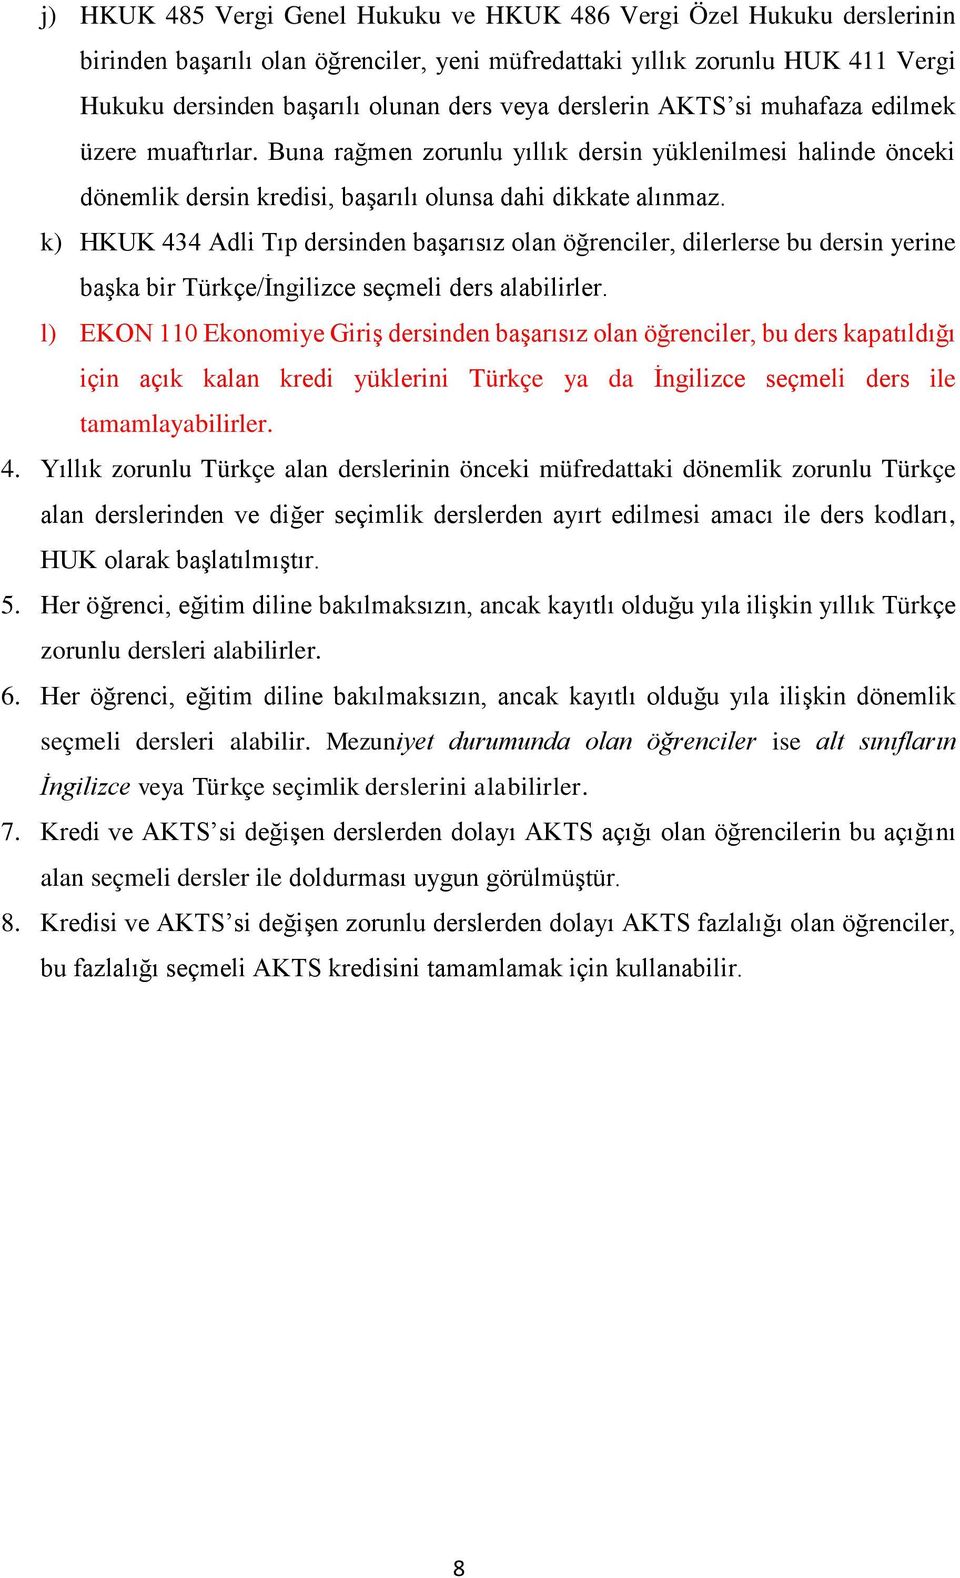 k) HKUK 434 Adli Tıp dersinden başarısız olan öğrenciler, dilerlerse bu dersin yerine başka bir Türkçe/İngilizce seçmeli ders alabilirler.